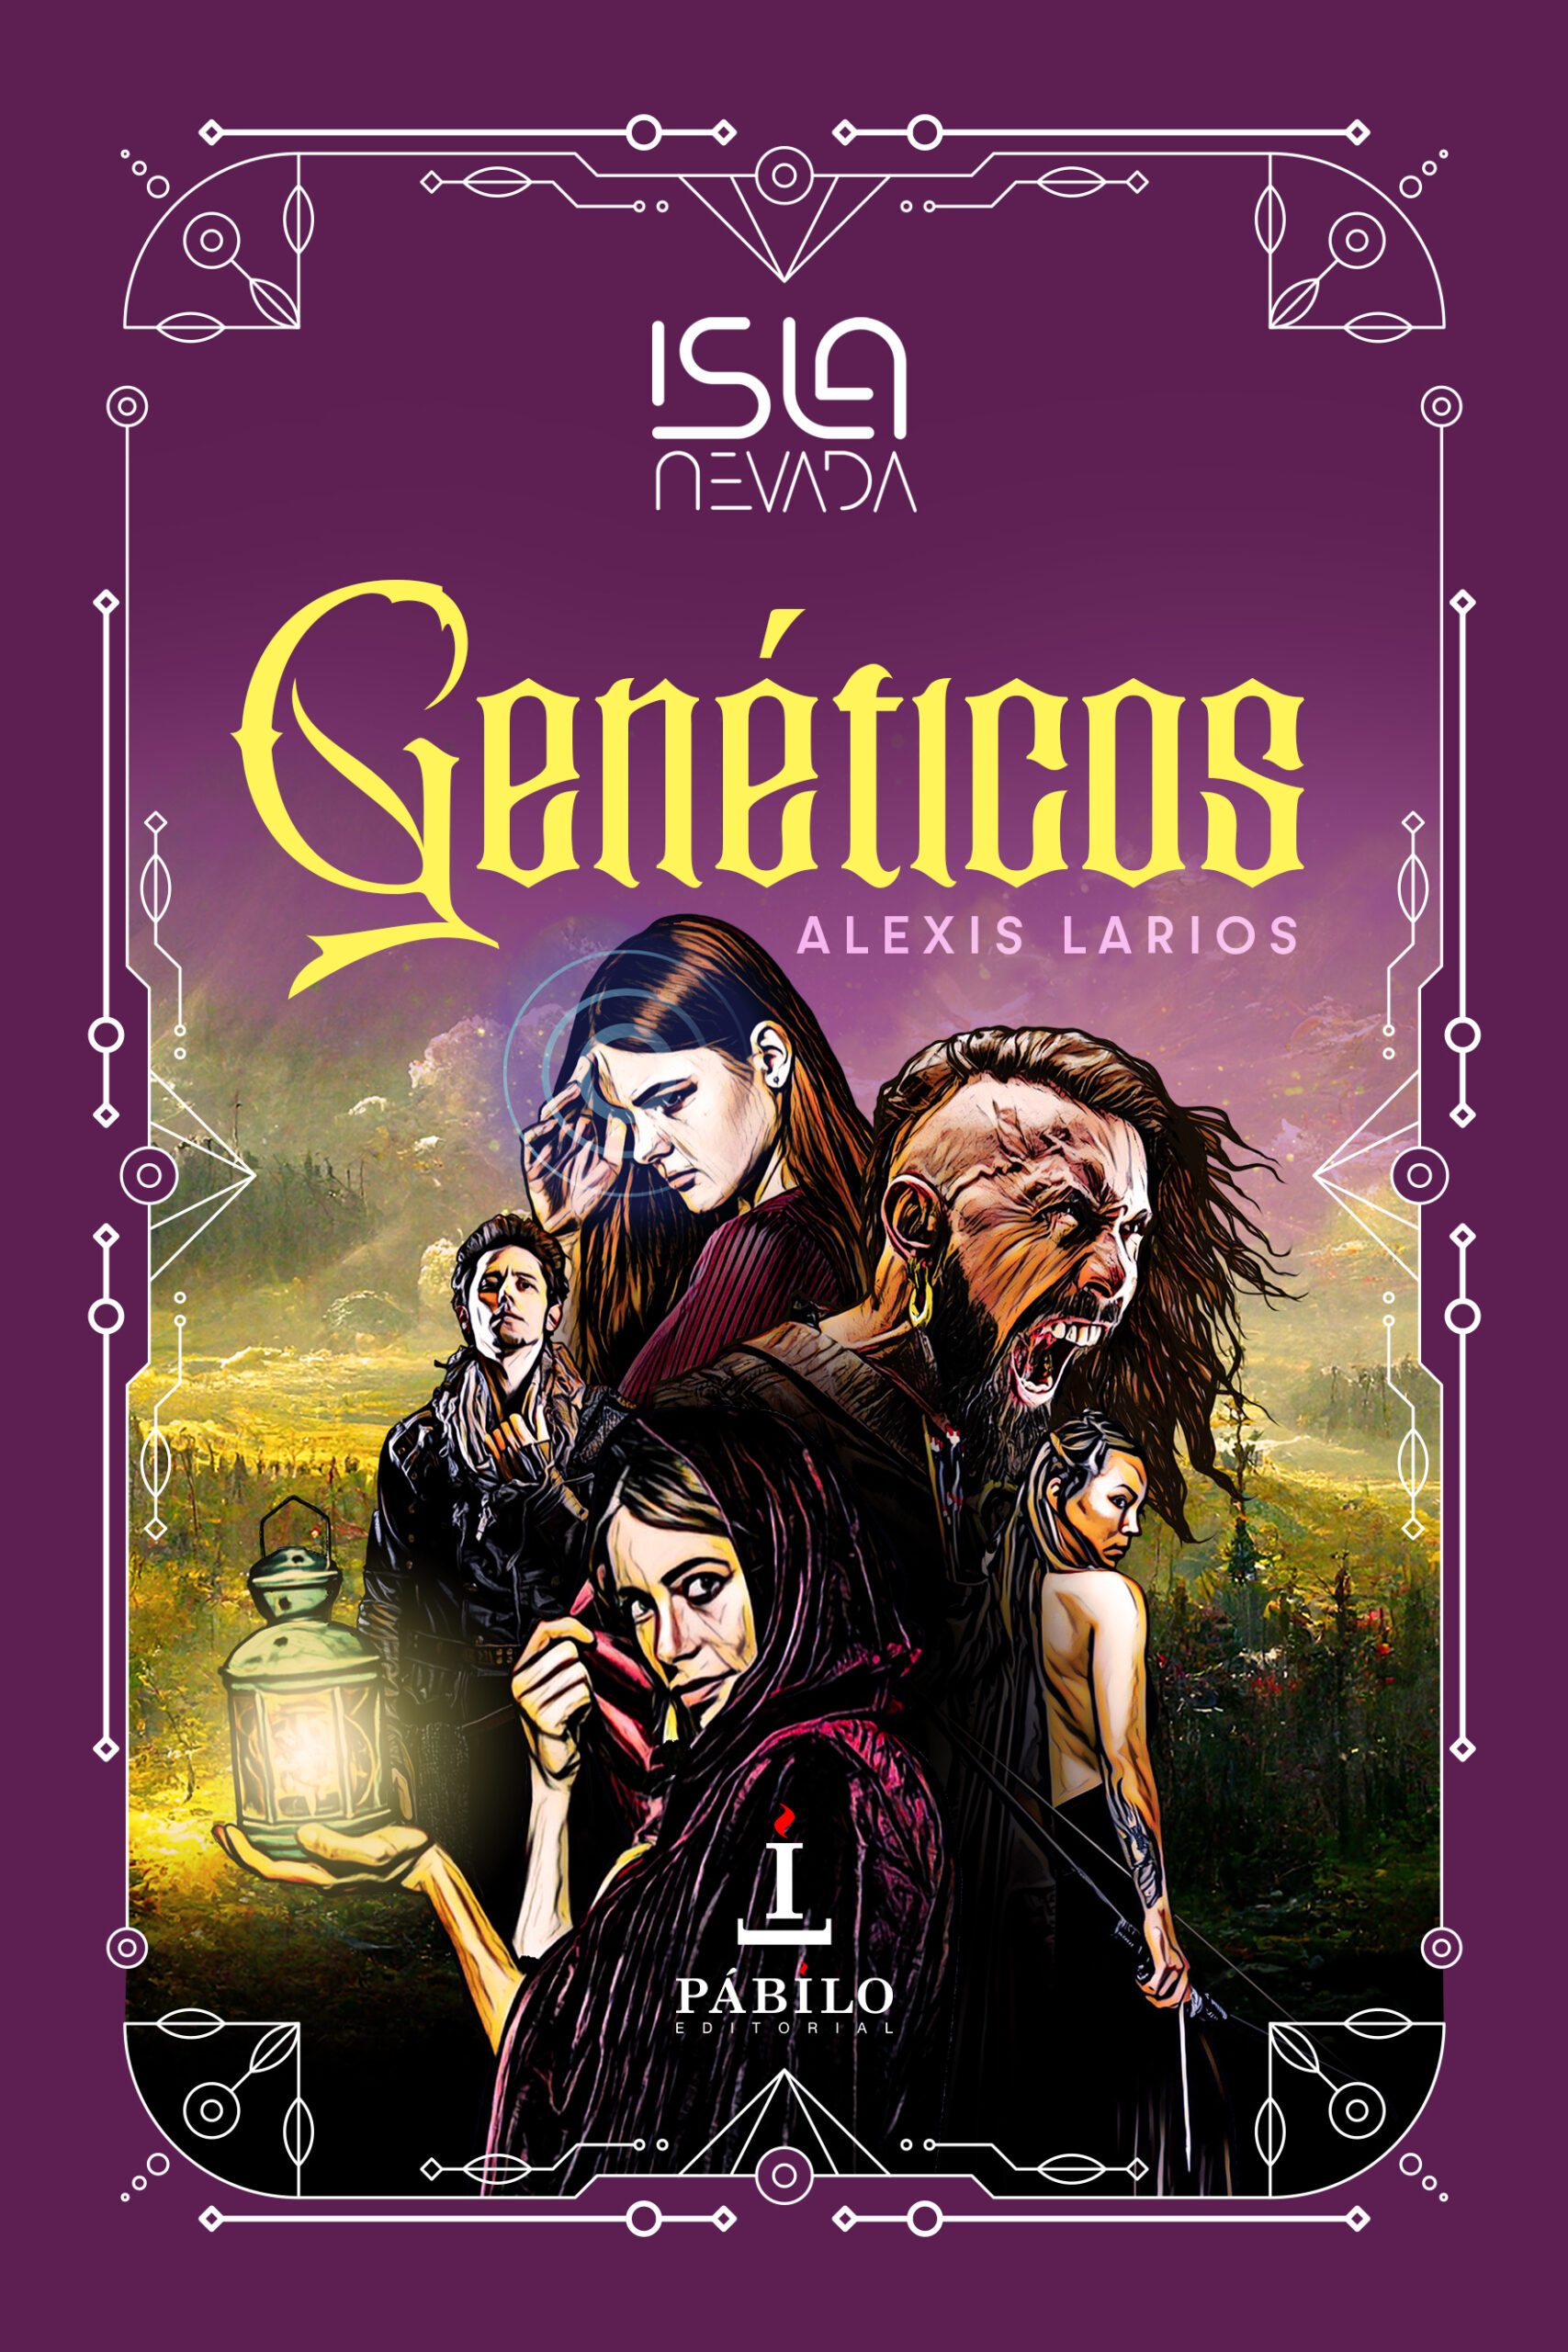 Genéticos inaugura la distópica saga Isla Nevada creada por Alexis Larios 1